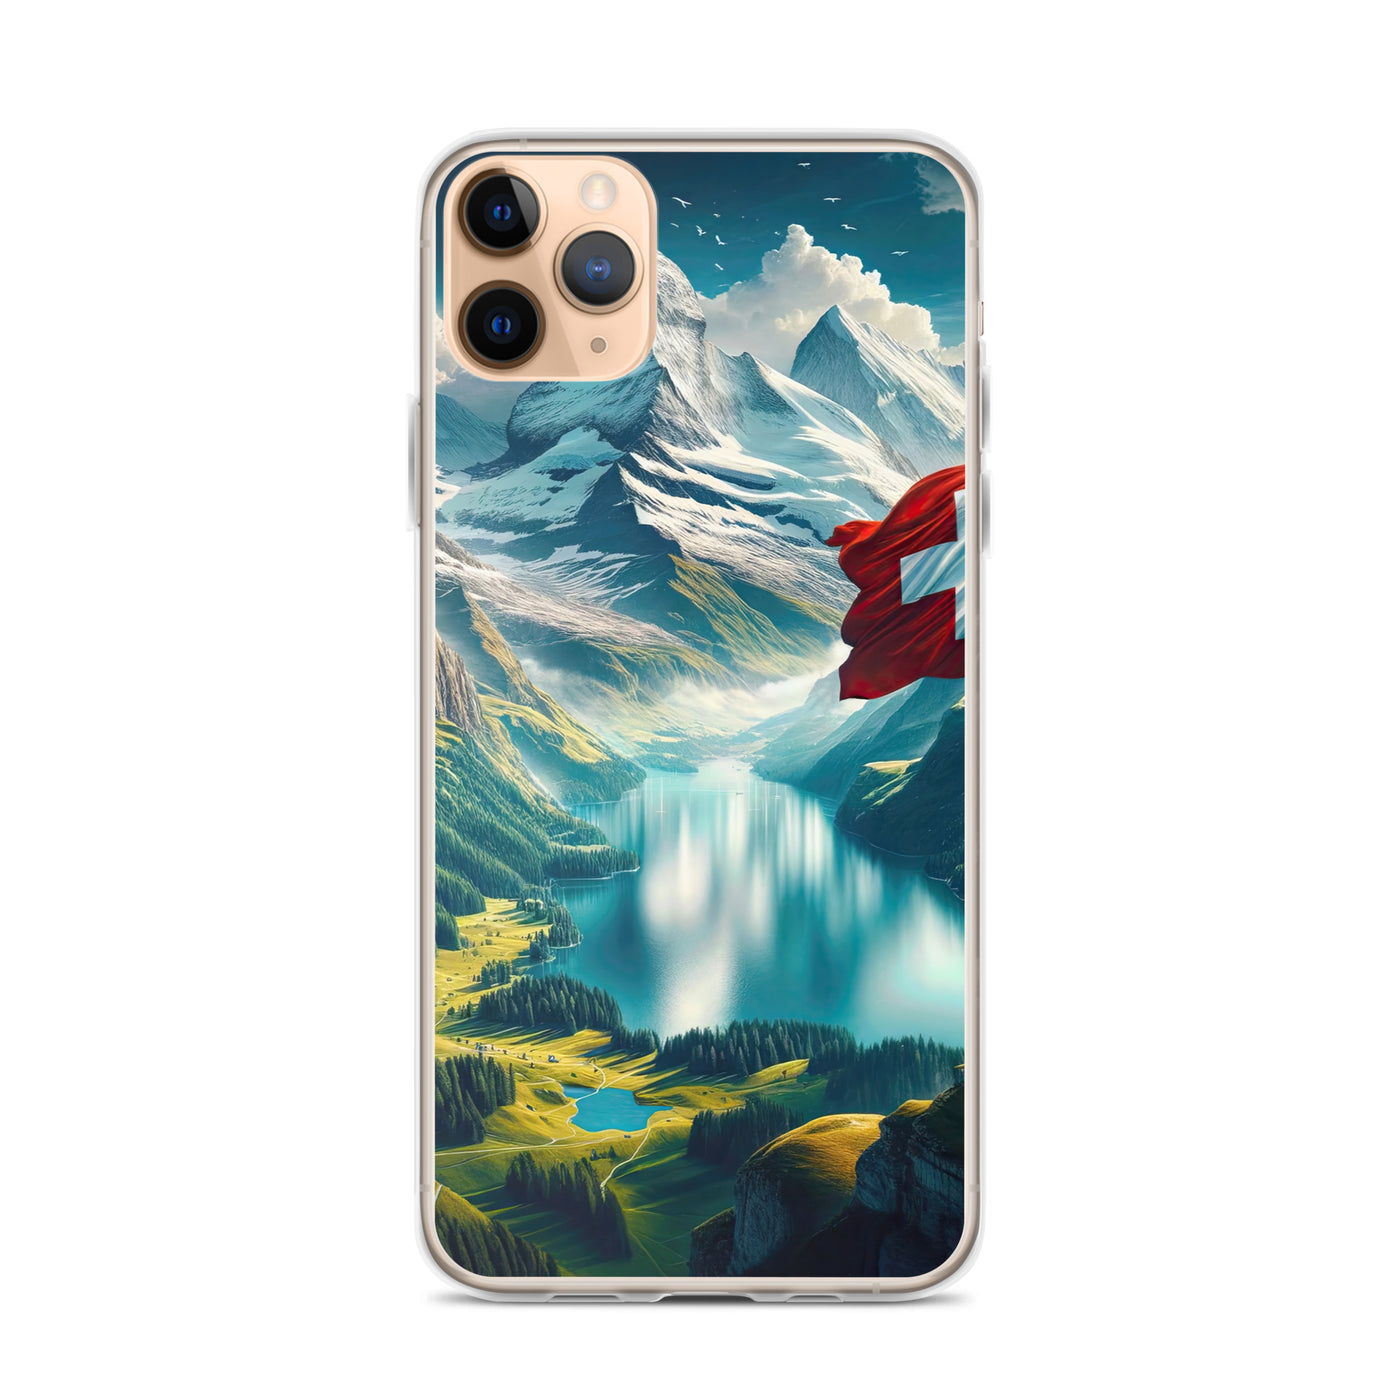 Ultraepische, fotorealistische Darstellung der Schweizer Alpenlandschaft mit Schweizer Flagge - iPhone Schutzhülle (durchsichtig) berge xxx yyy zzz iPhone 11 Pro Max